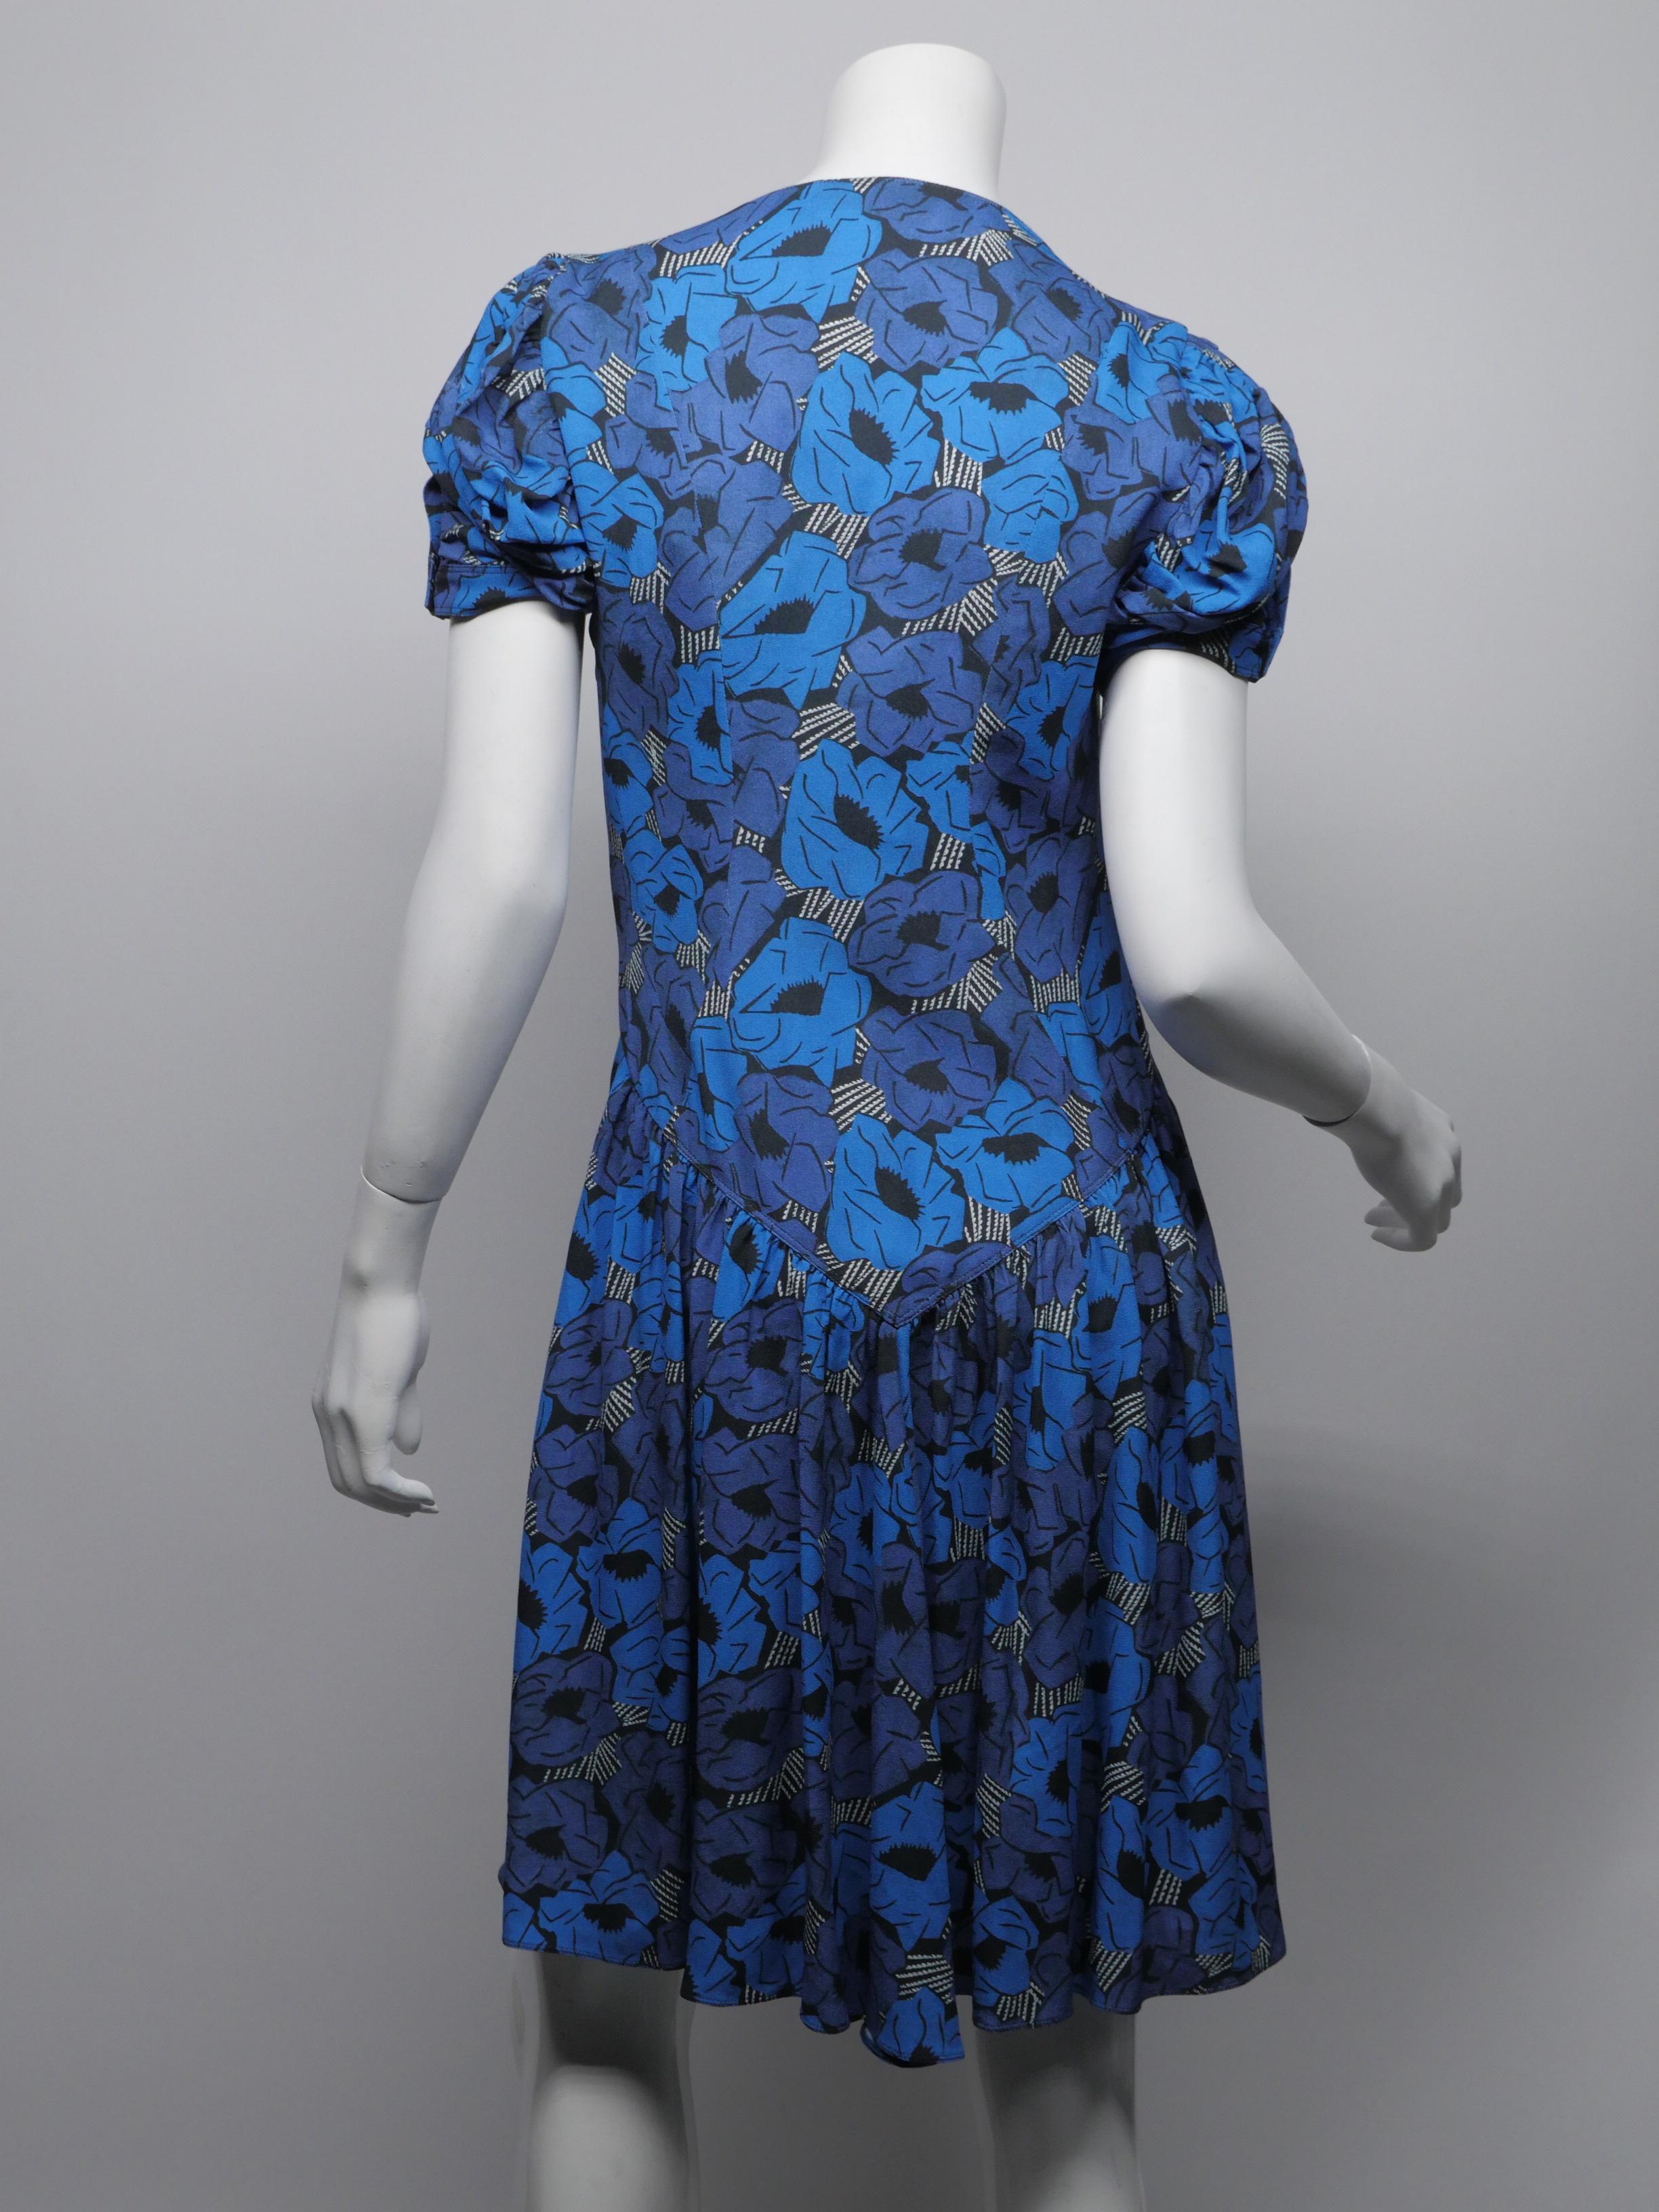 Women's or Men's Yves Saint Laurent Size 38 Blue Floral Dress